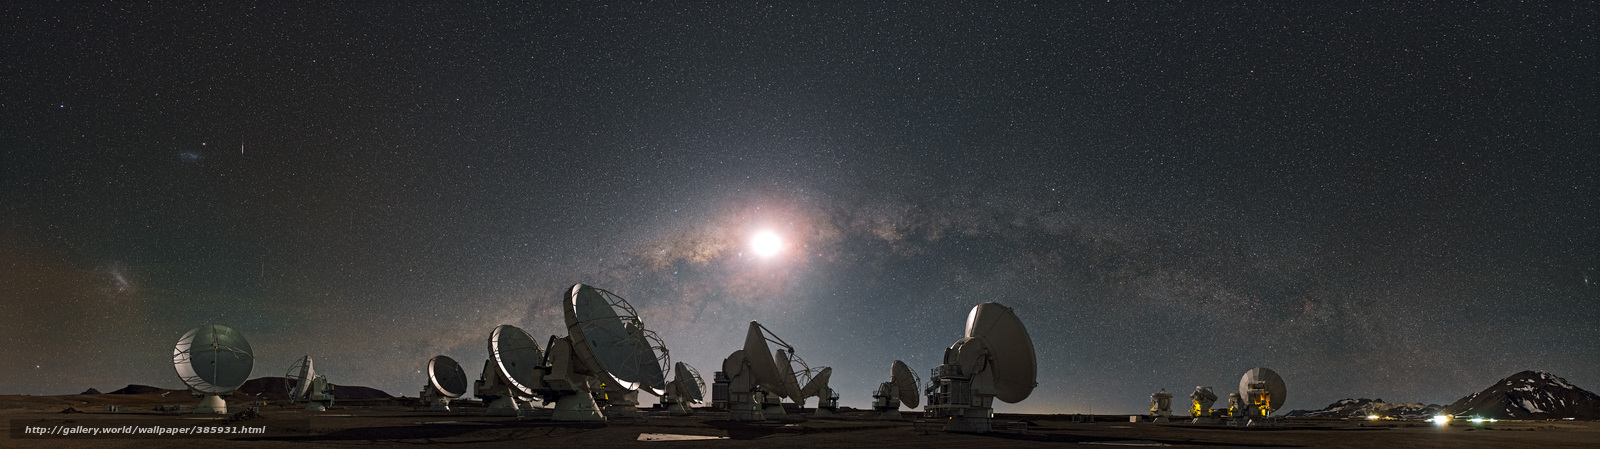 Wallpaper Milky Way Moon Star Radio Telescope Desktop